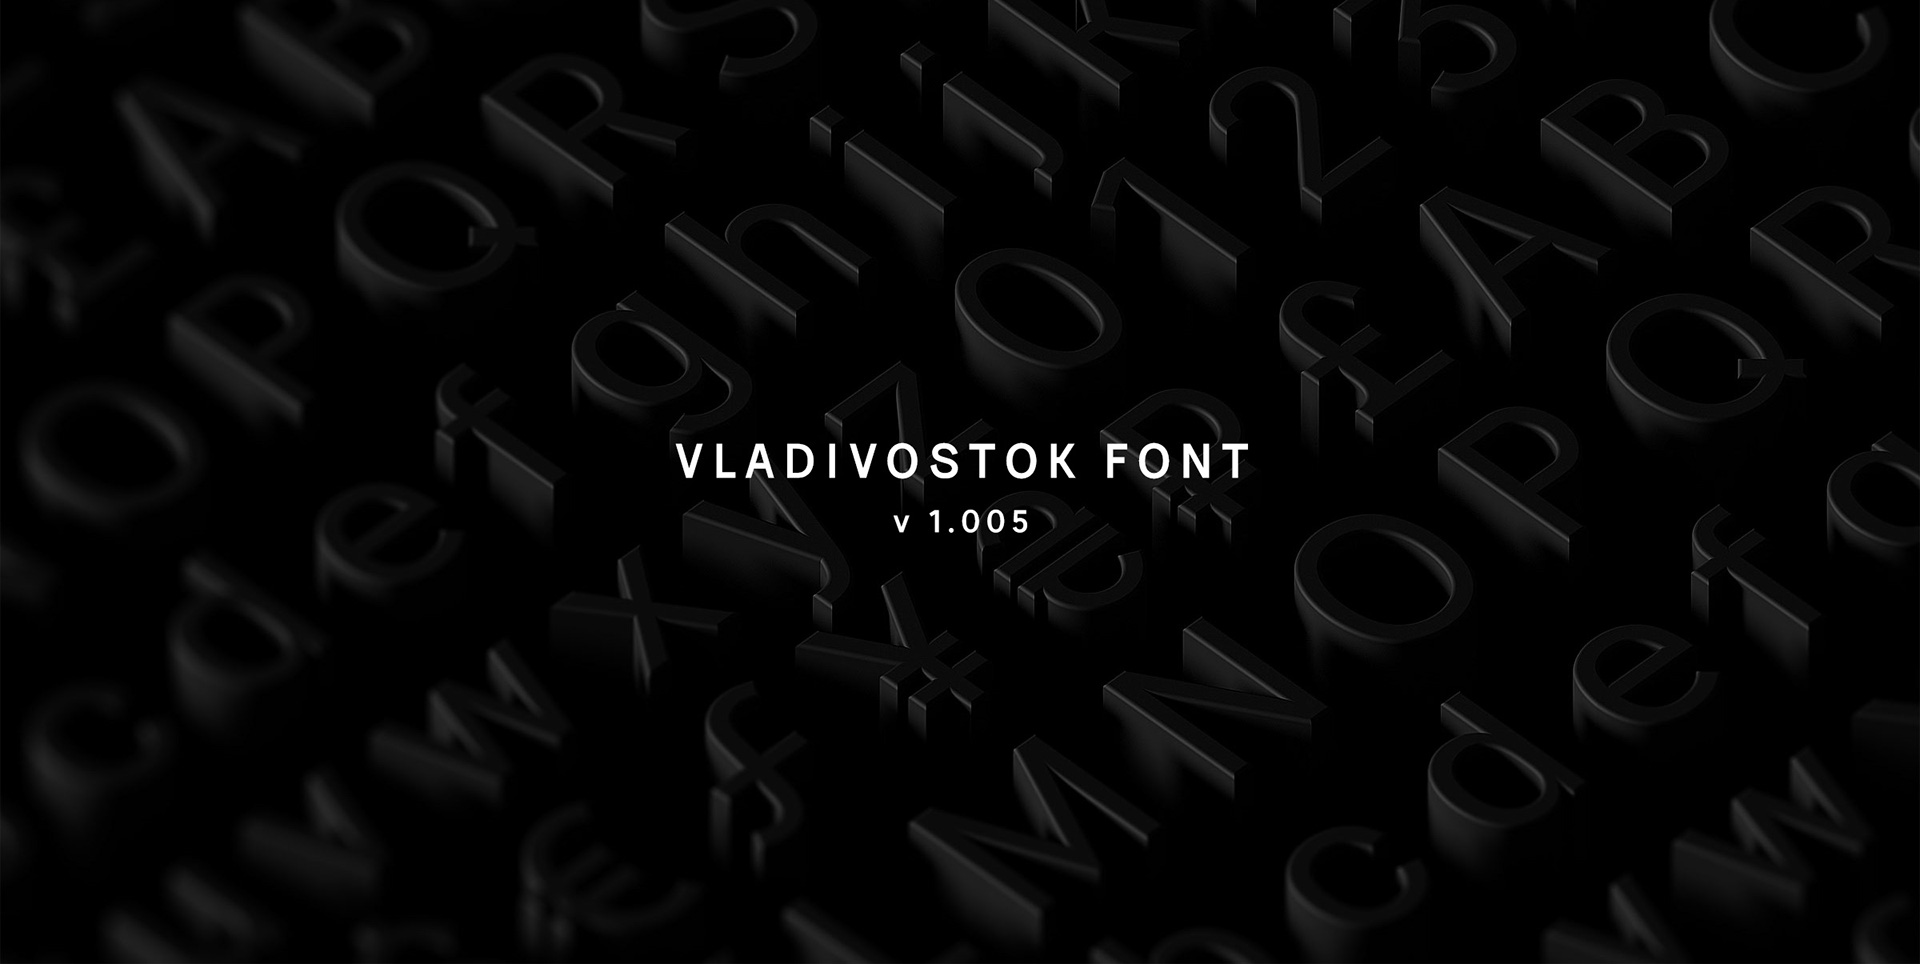 Ejemplo de fuente Vladivostok Bold